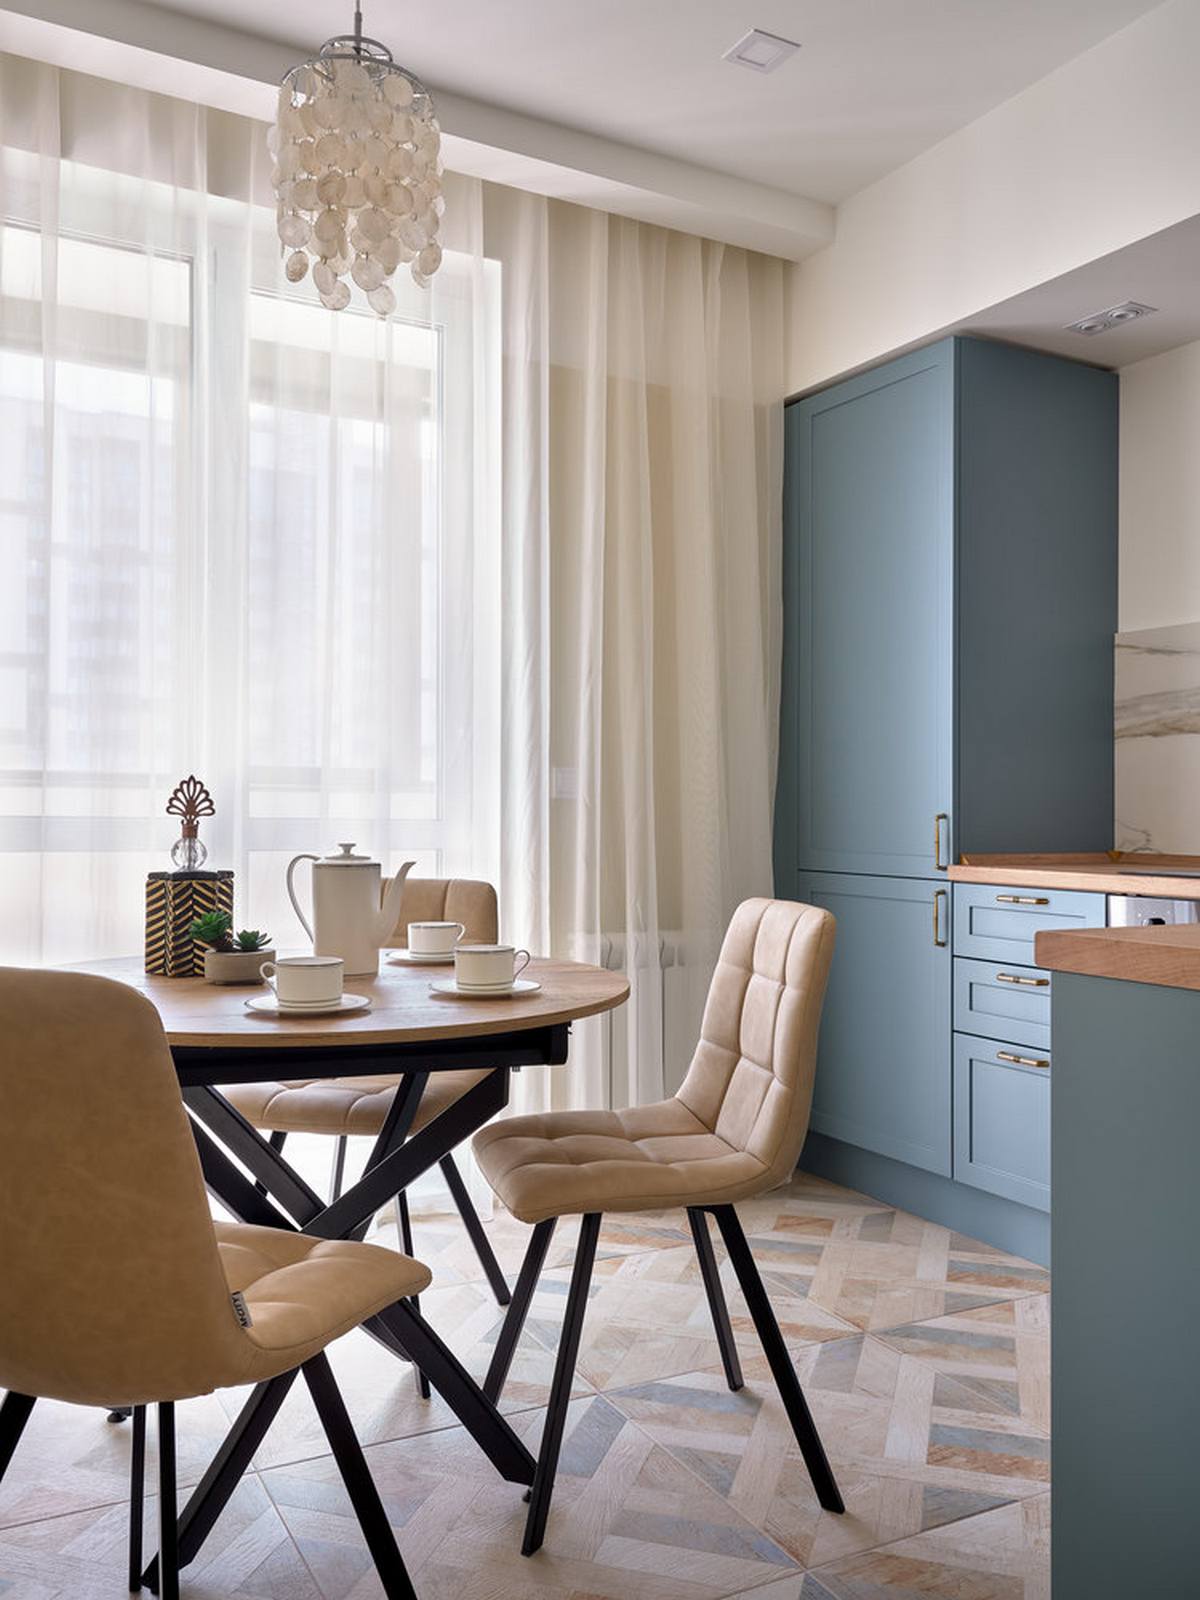 Tương tự như khu vực lối vào nhà, sàn phòng bếp cũng được ốp gạch họa tiết nhiều màu pastel để dễ dàng hơn trong việc vệ sinh cũng như tăng độ bền, tạo sự phân vùng với khu vực tiếp khách.